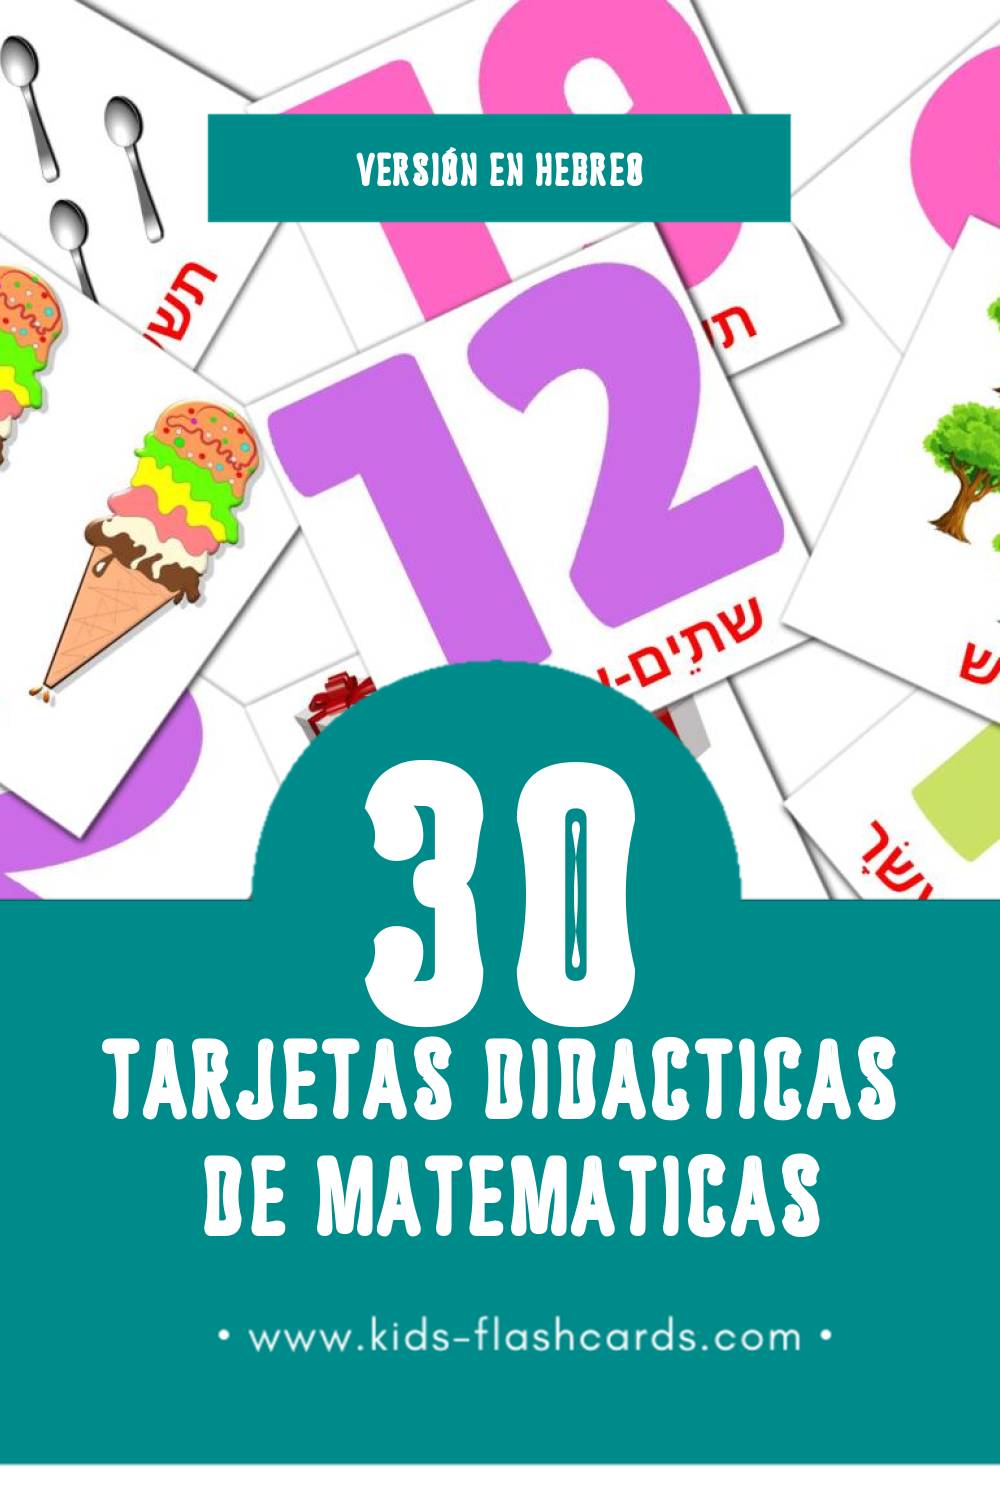 Tarjetas visuales de מתמטיקה para niños pequeños (30 tarjetas en Hebreo)